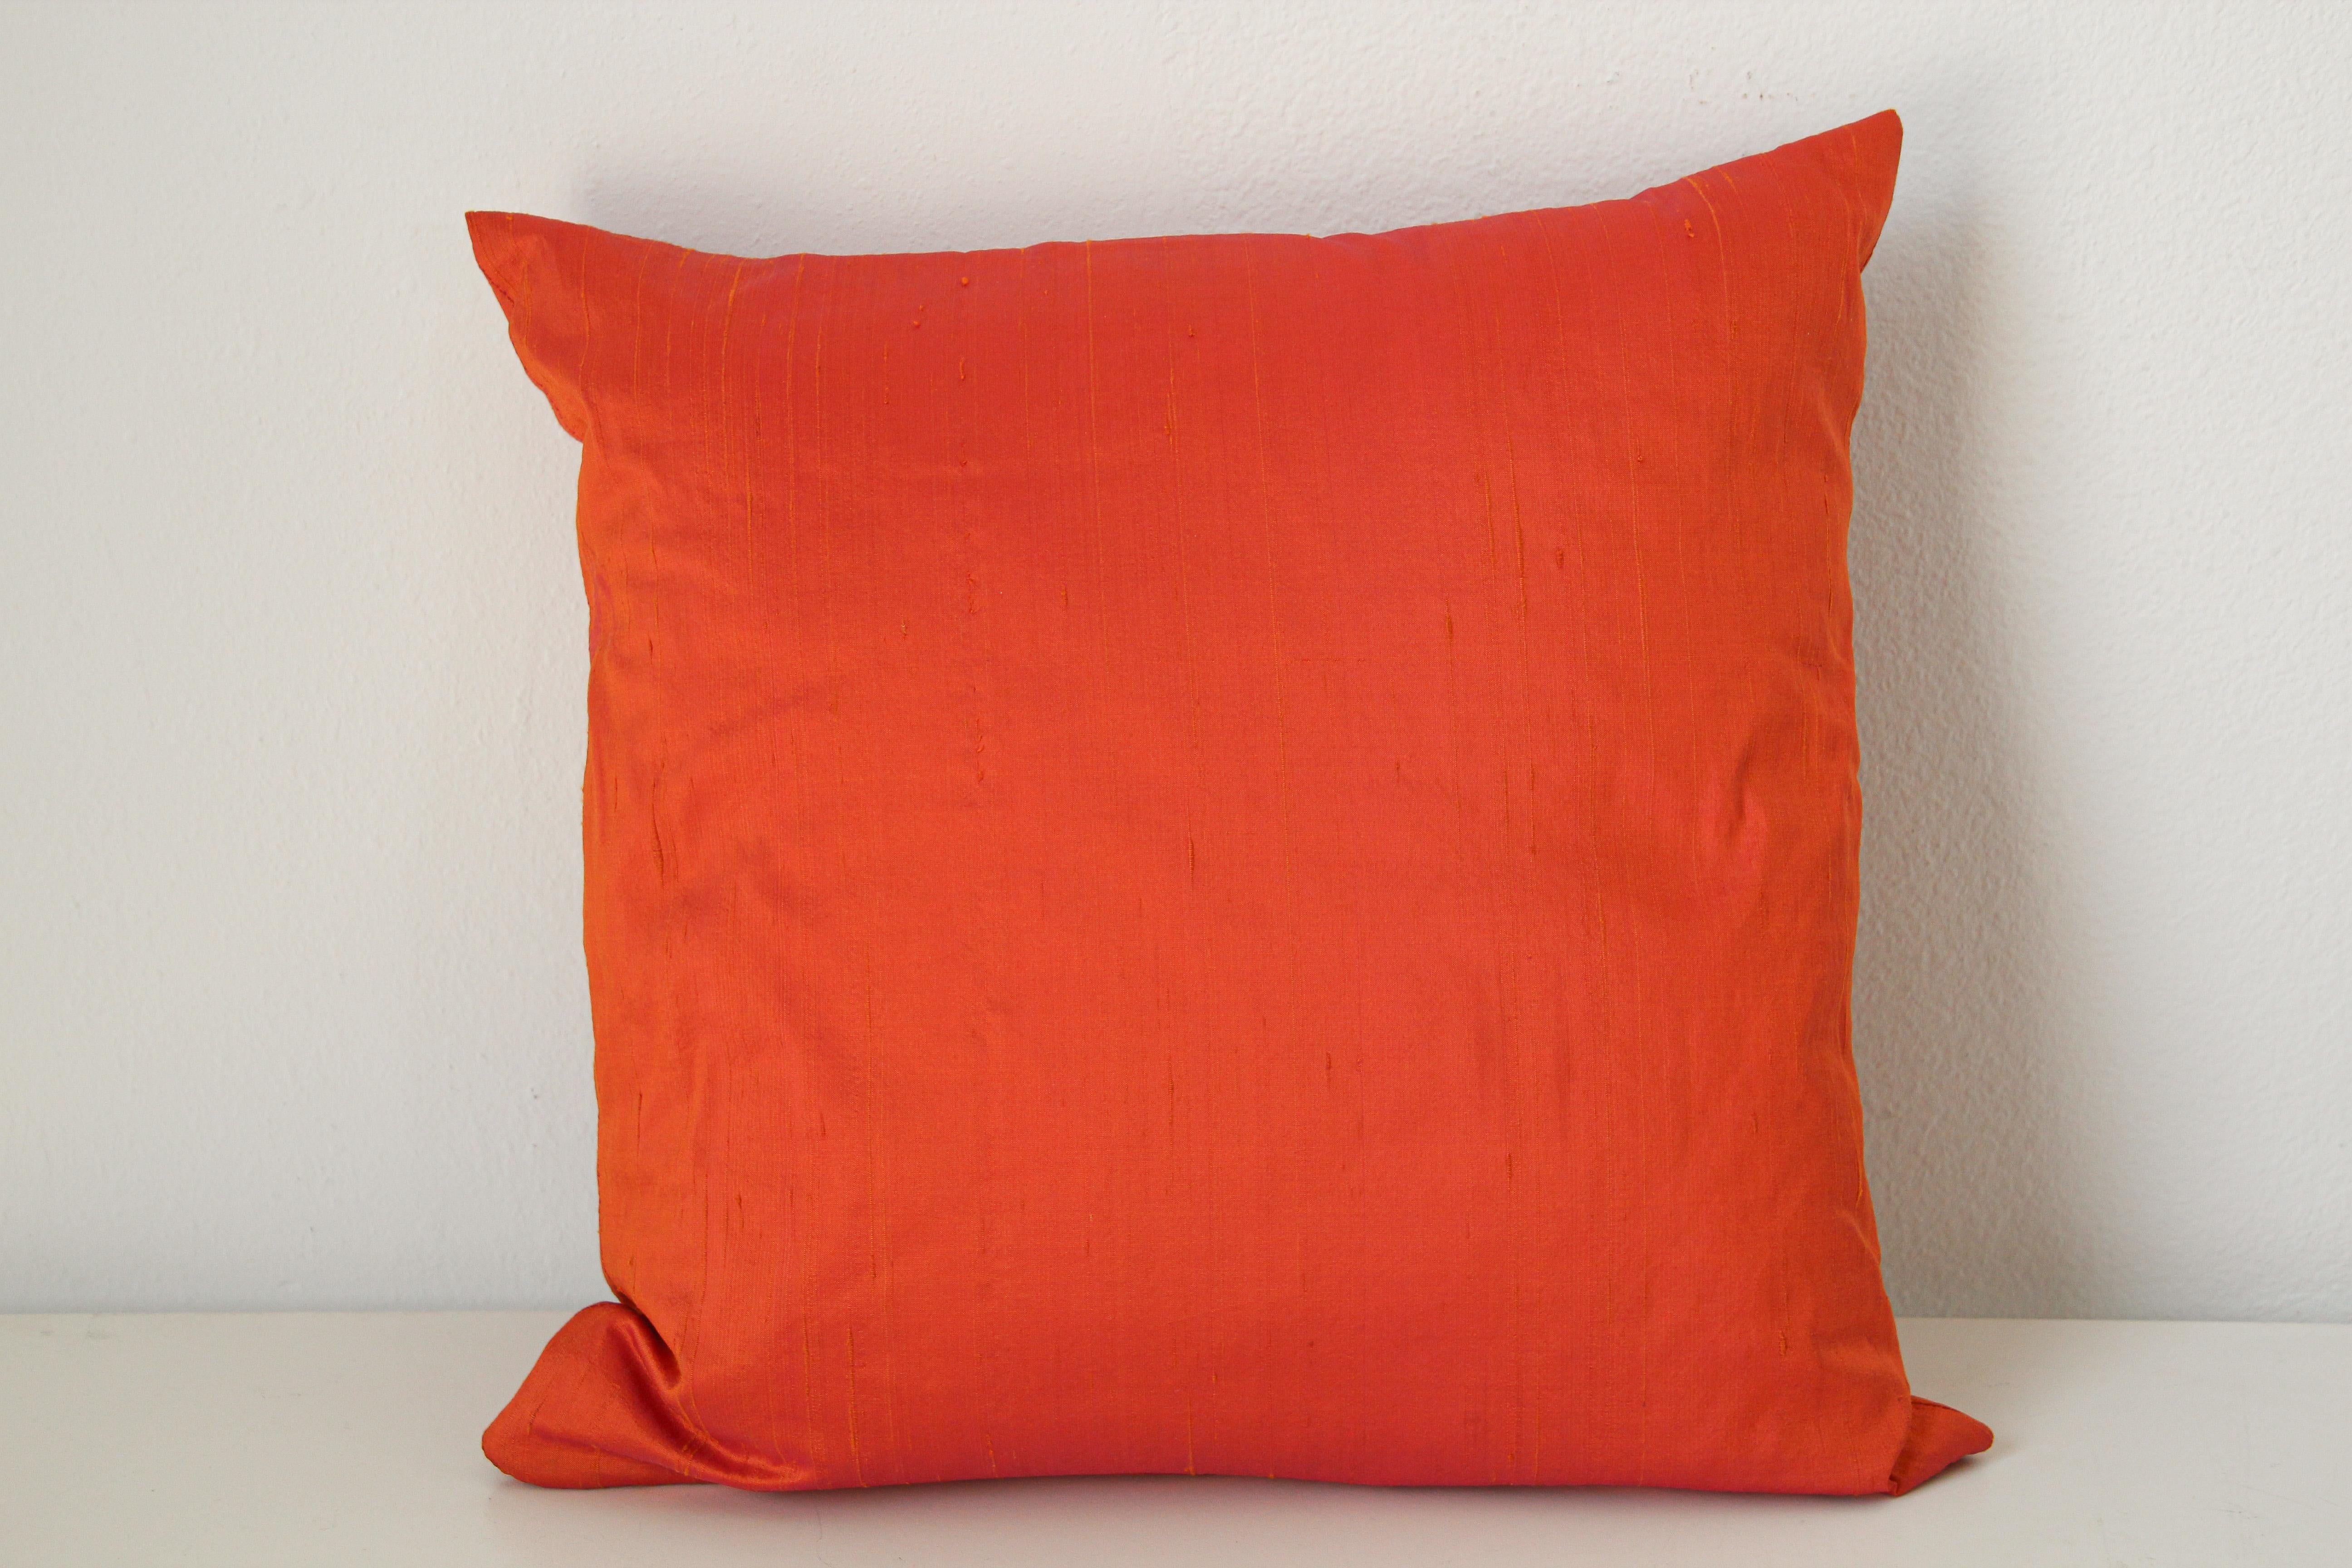 Asiatisches dekoratives orangefarbenes Rohseide-Kissen.
Luxuriöse Seide aus orangefarbener Rohseide.
Handgefertigt in Indien.
Reißverschluss, Dauneneinsatz.